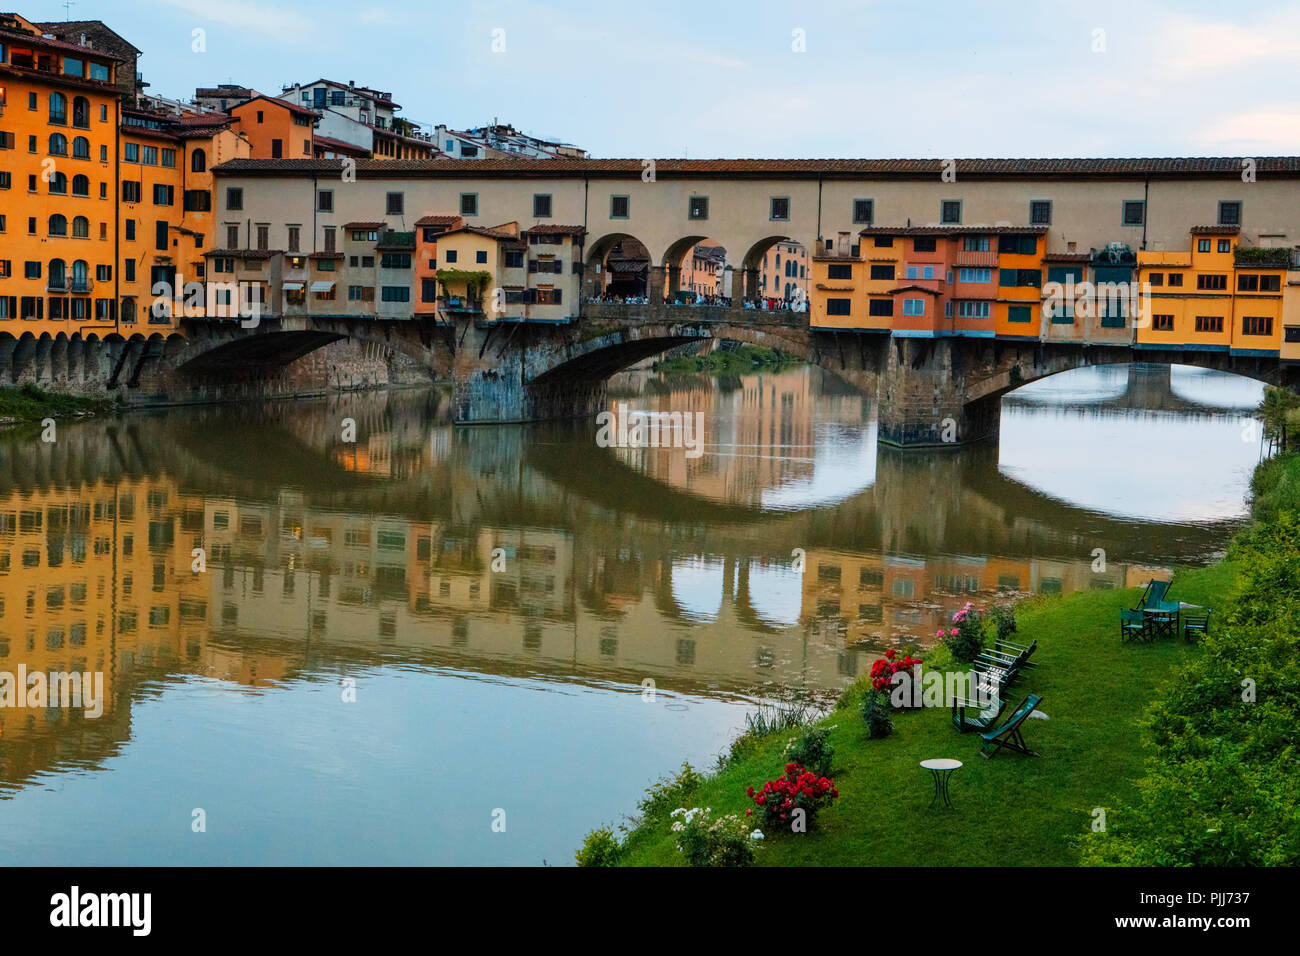 Ponte Vechio pont les plus célèbres attractions touristiques de Florence et reflétée dans les eaux du fleuve Arno avec encore de l'architecture le long de la rivière Banque D'Images